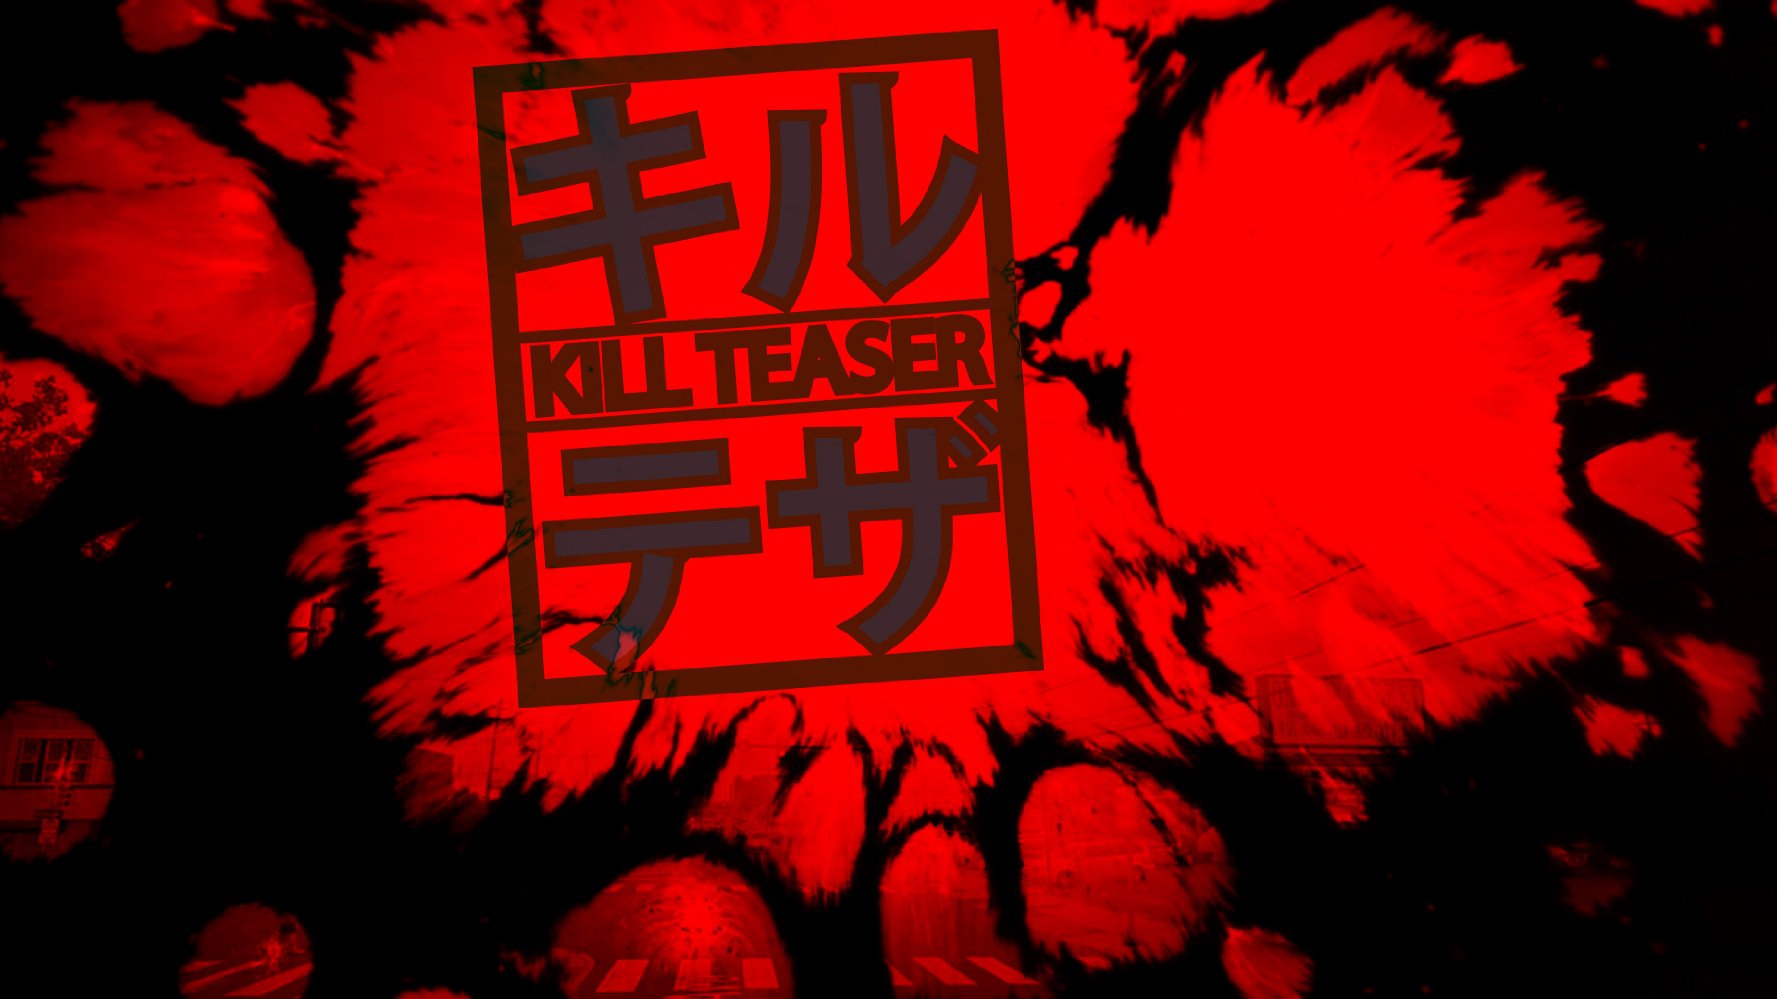  Kill Teaser (2017)